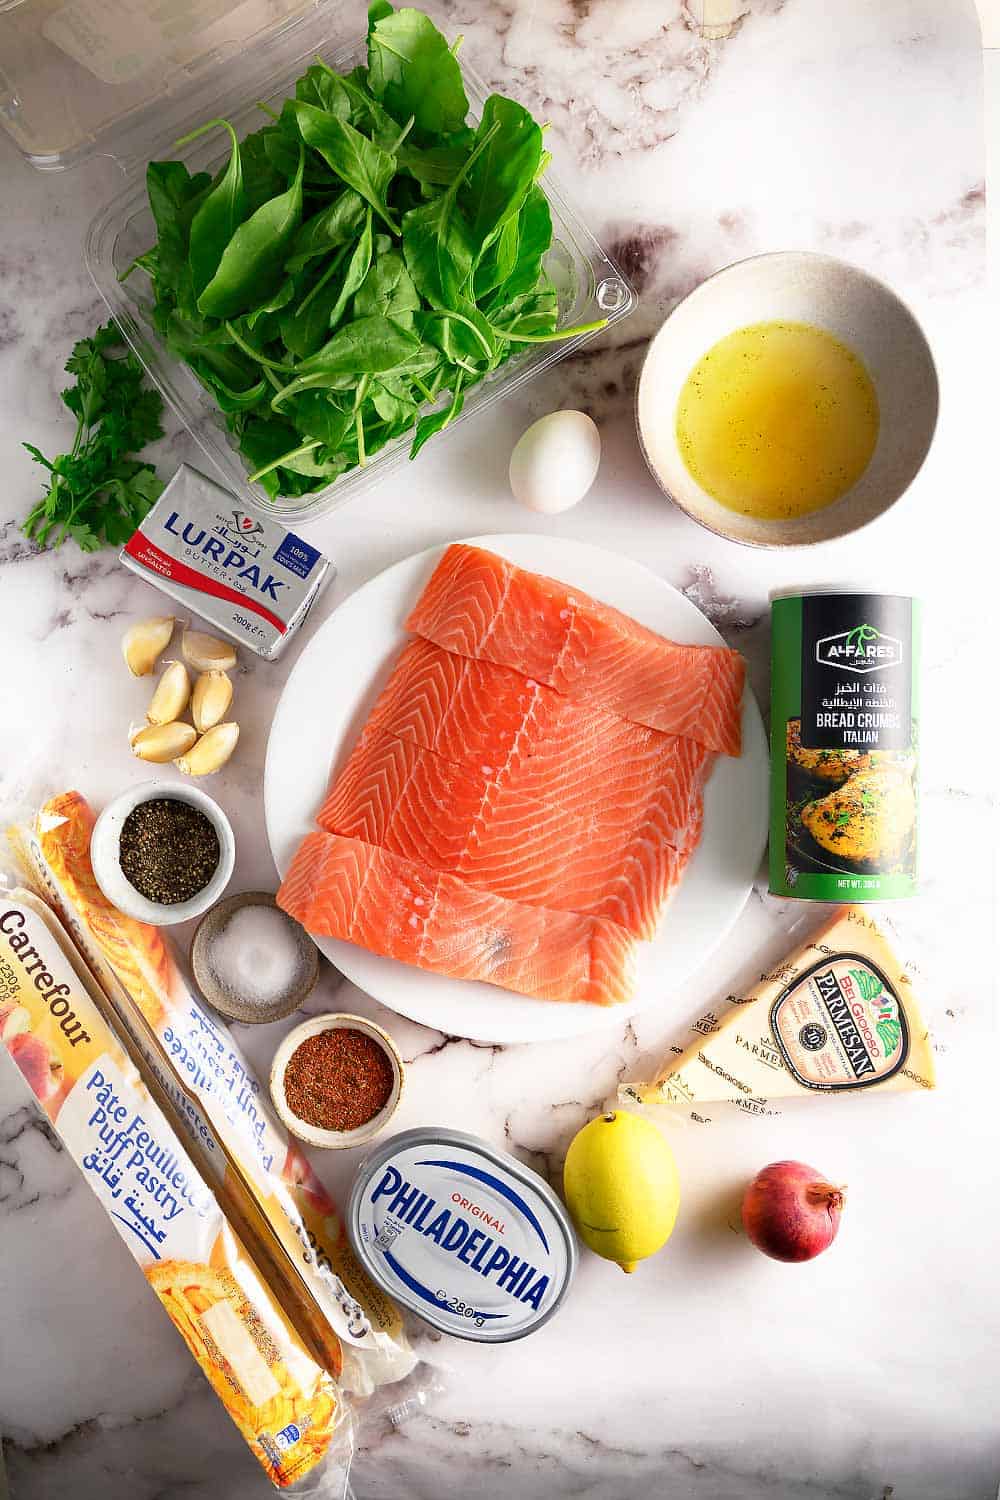 salmon wellington recipe ingredients